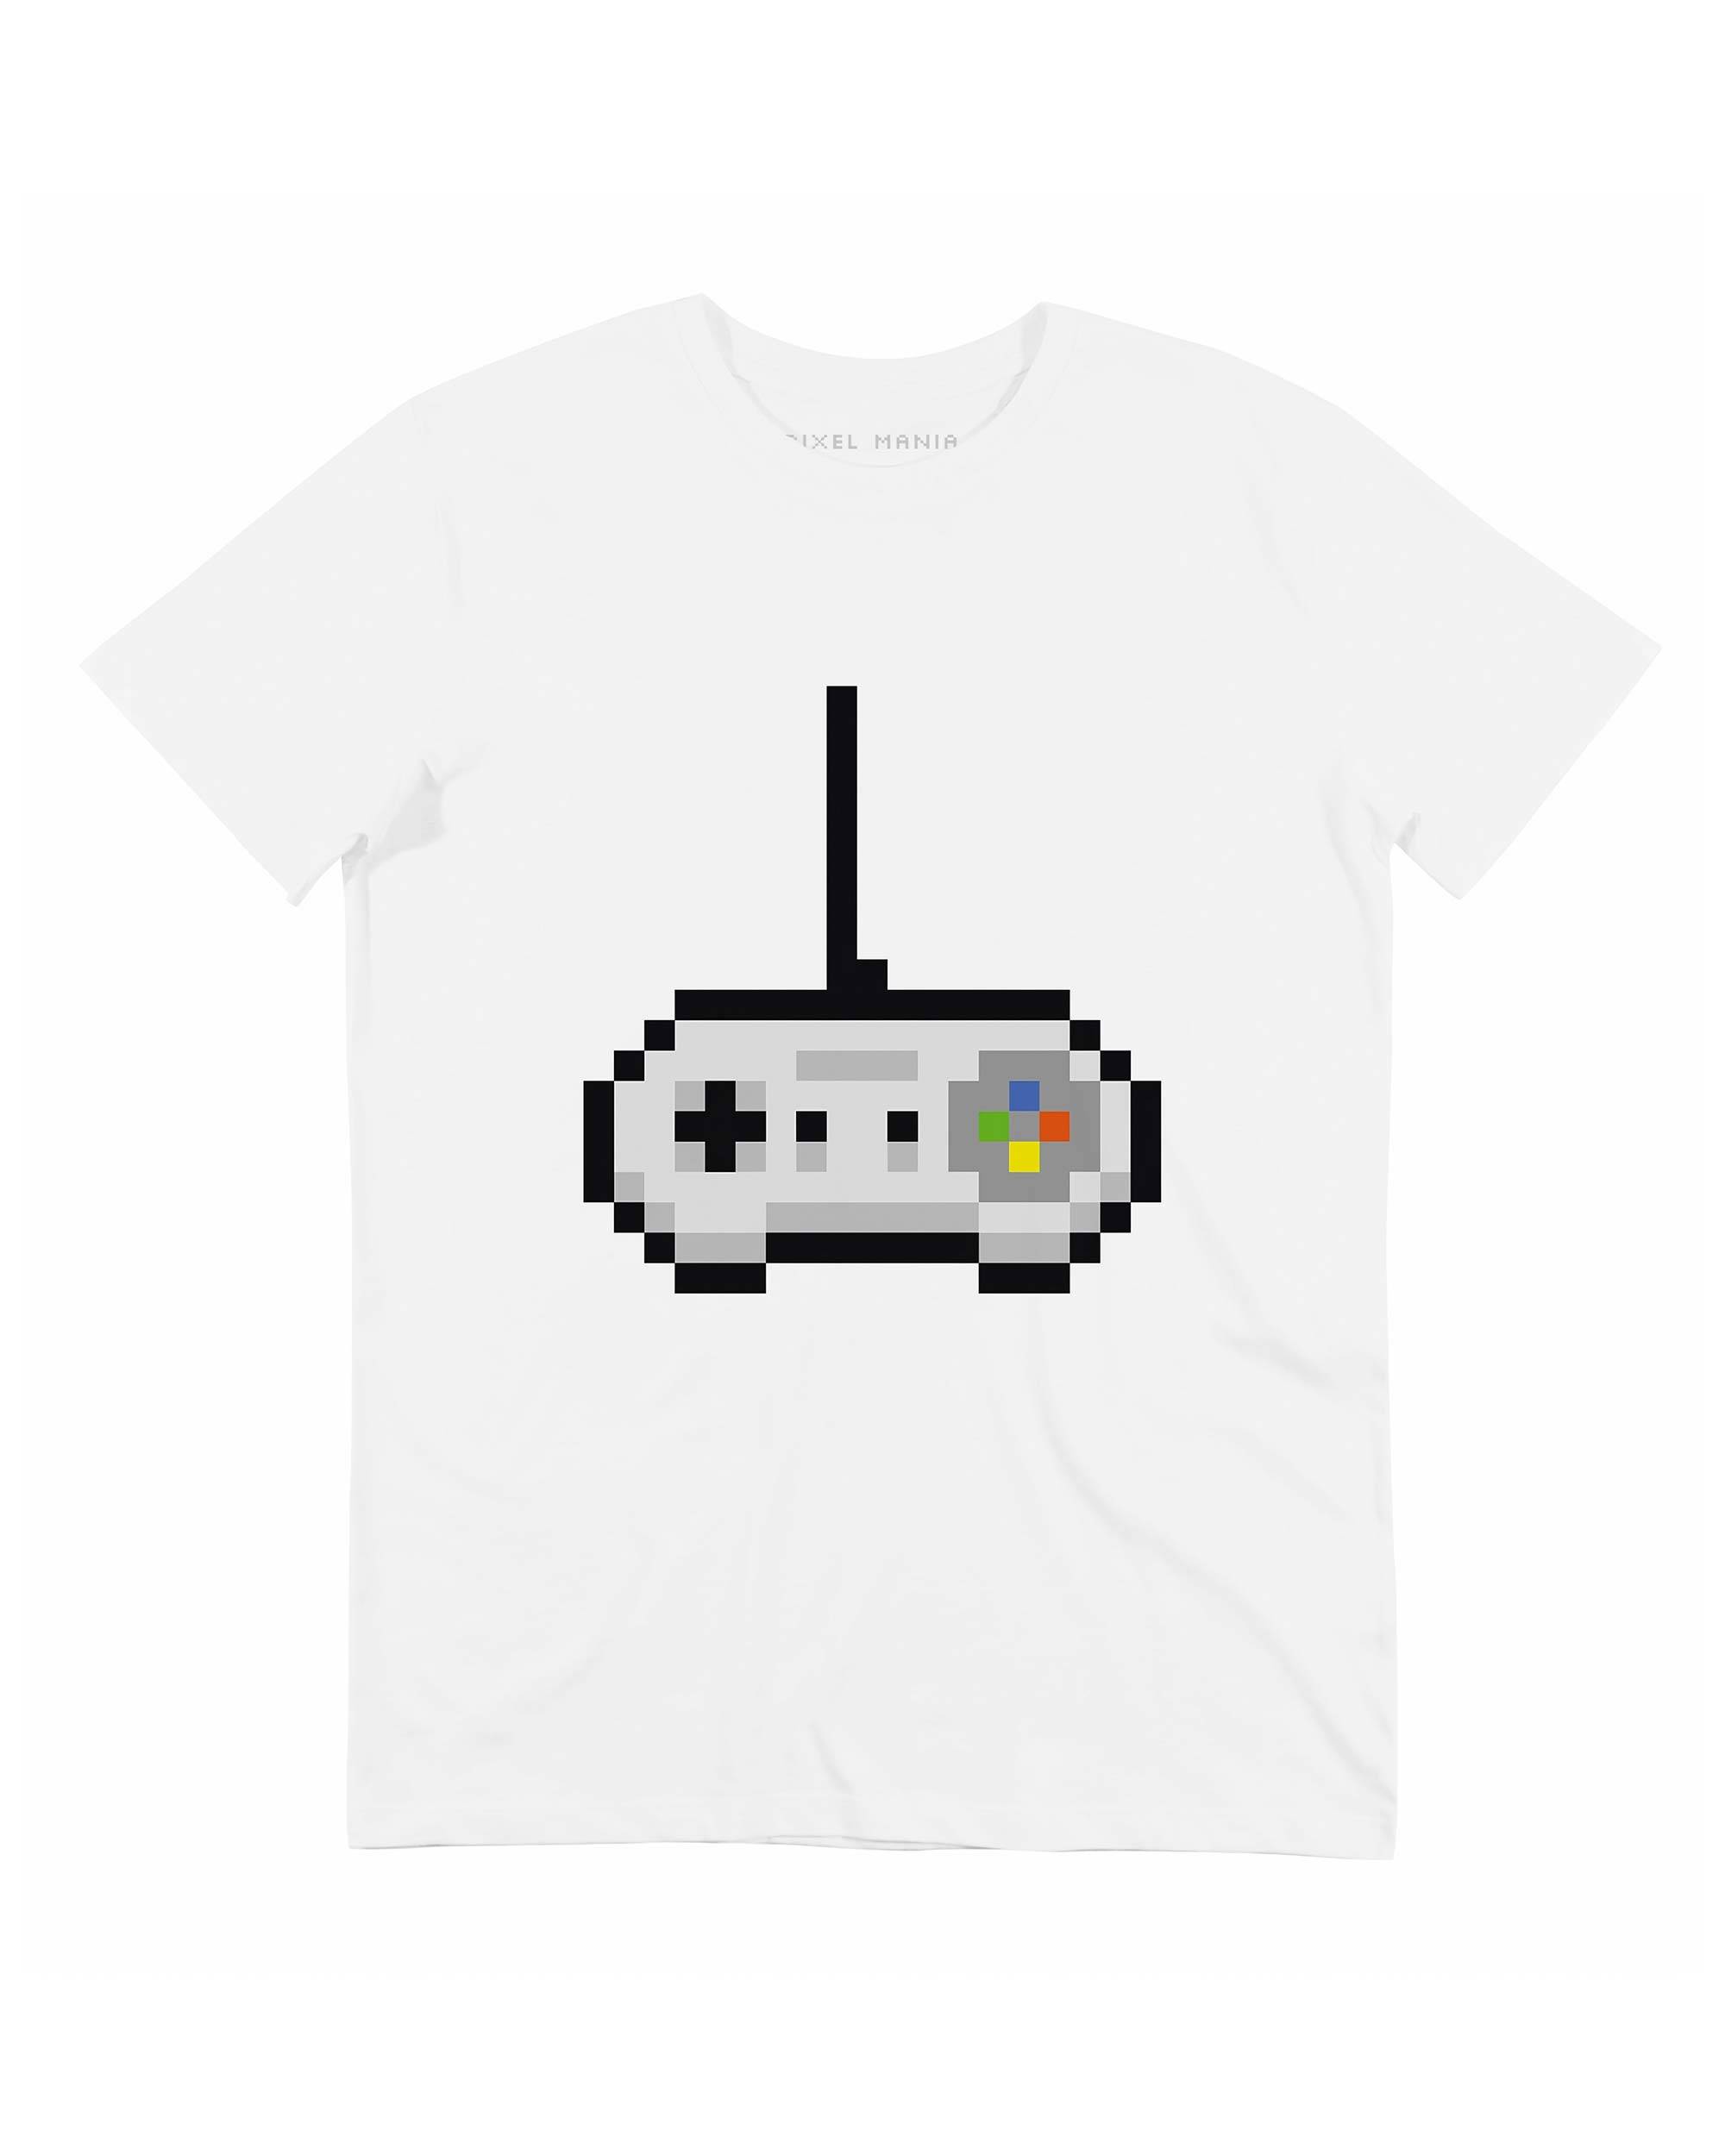 T-shirt Manette Nintendo Pixel Grafitee